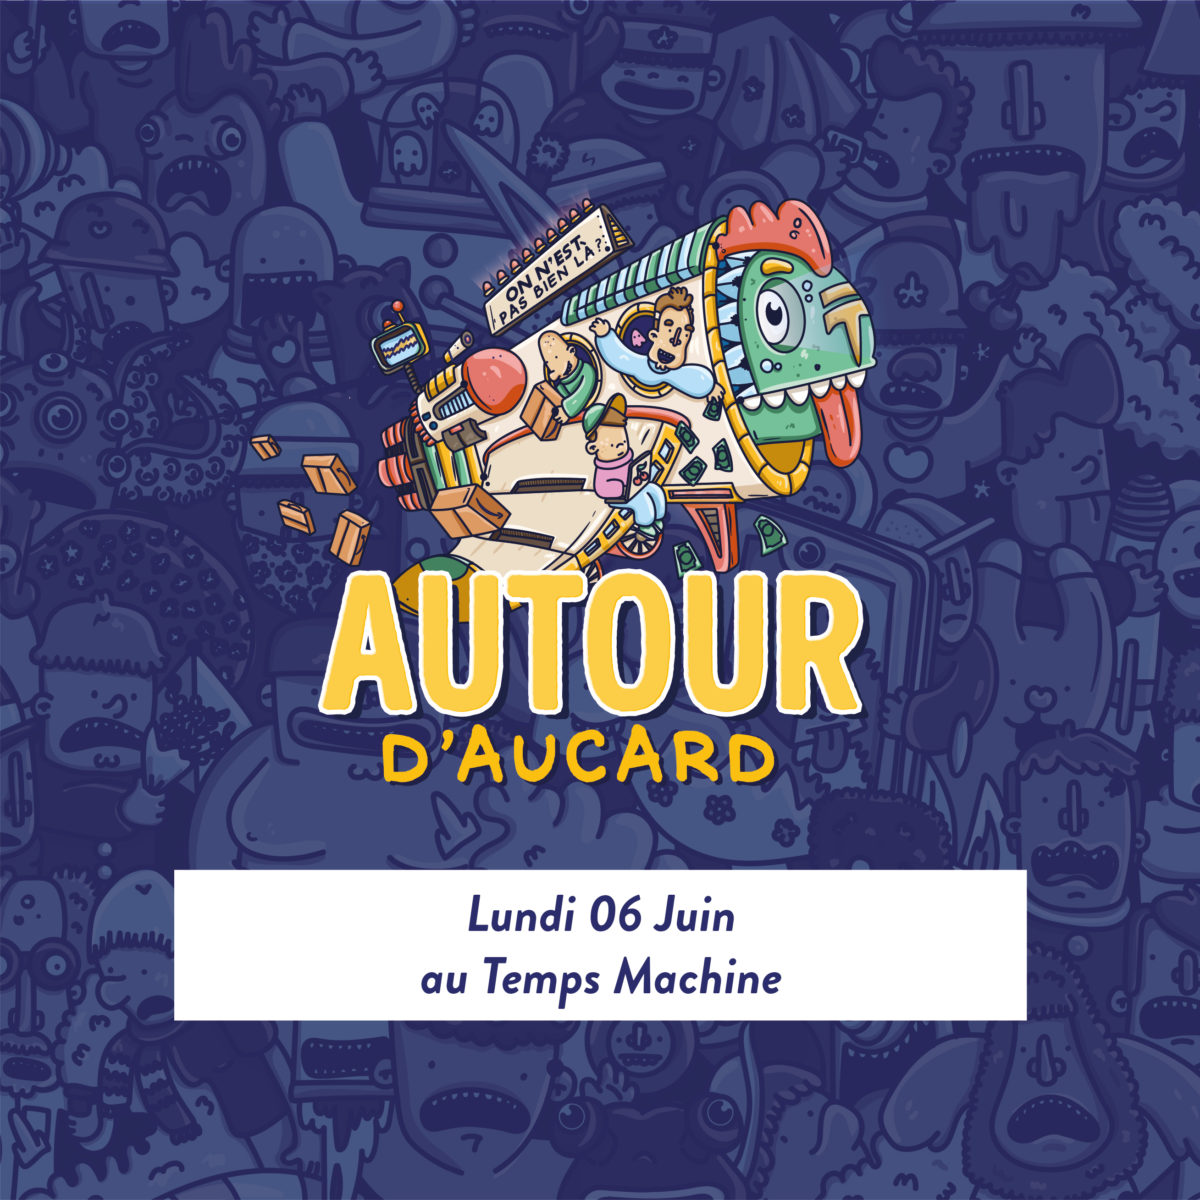 Autour d’Aucard : Le Warm Up